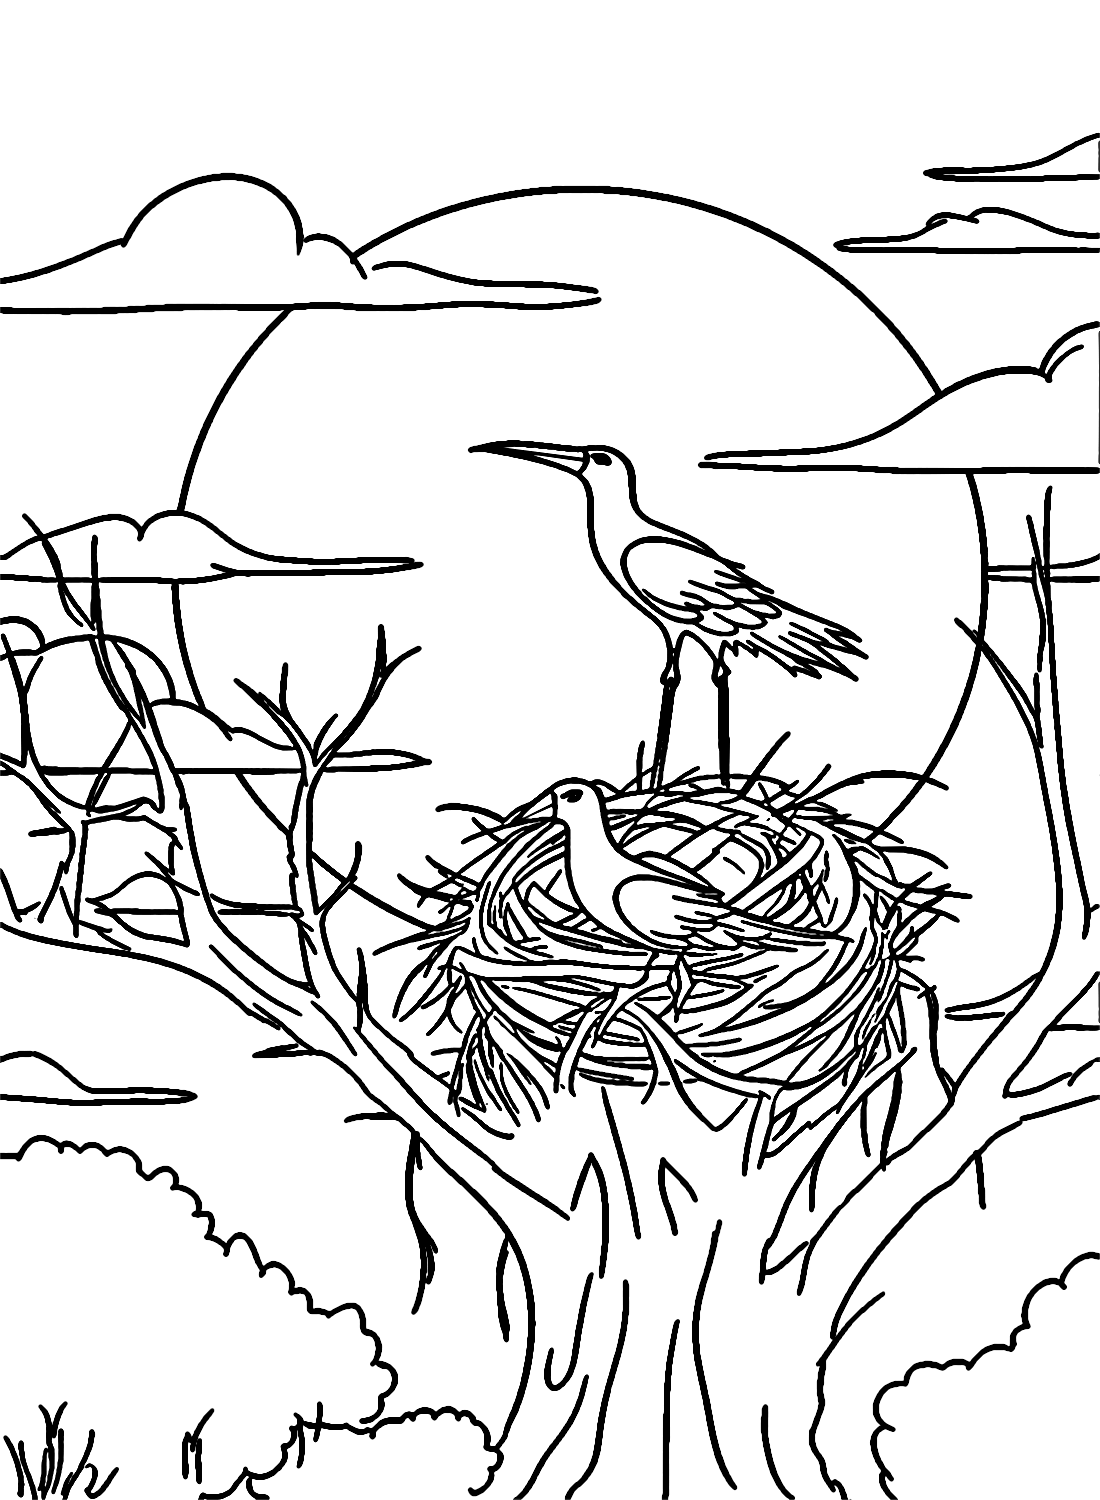 鹳鸟在鹳鸟的高树顶上筑巢